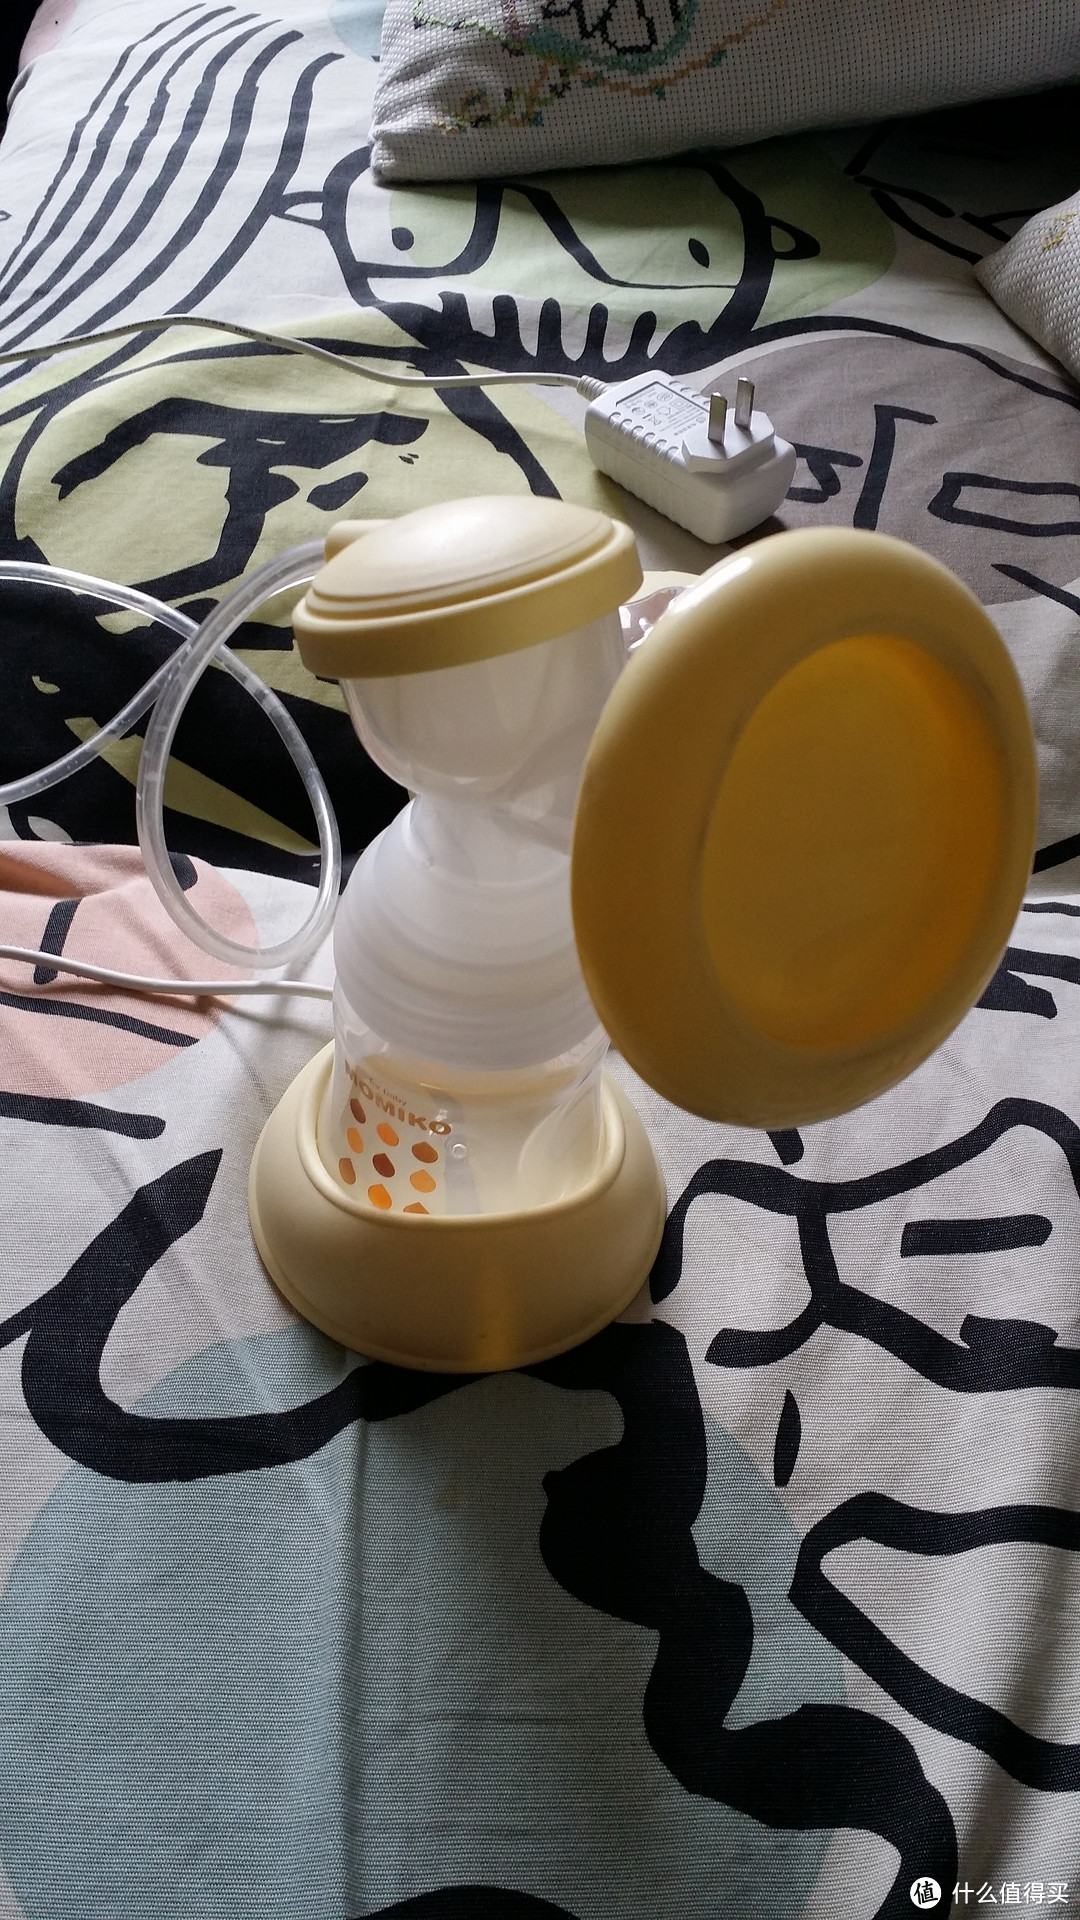 新安怡新安怡手动吸奶器使用视频教程，让你轻松掌握吸奶技巧 新安怡手动吸奶器的视频